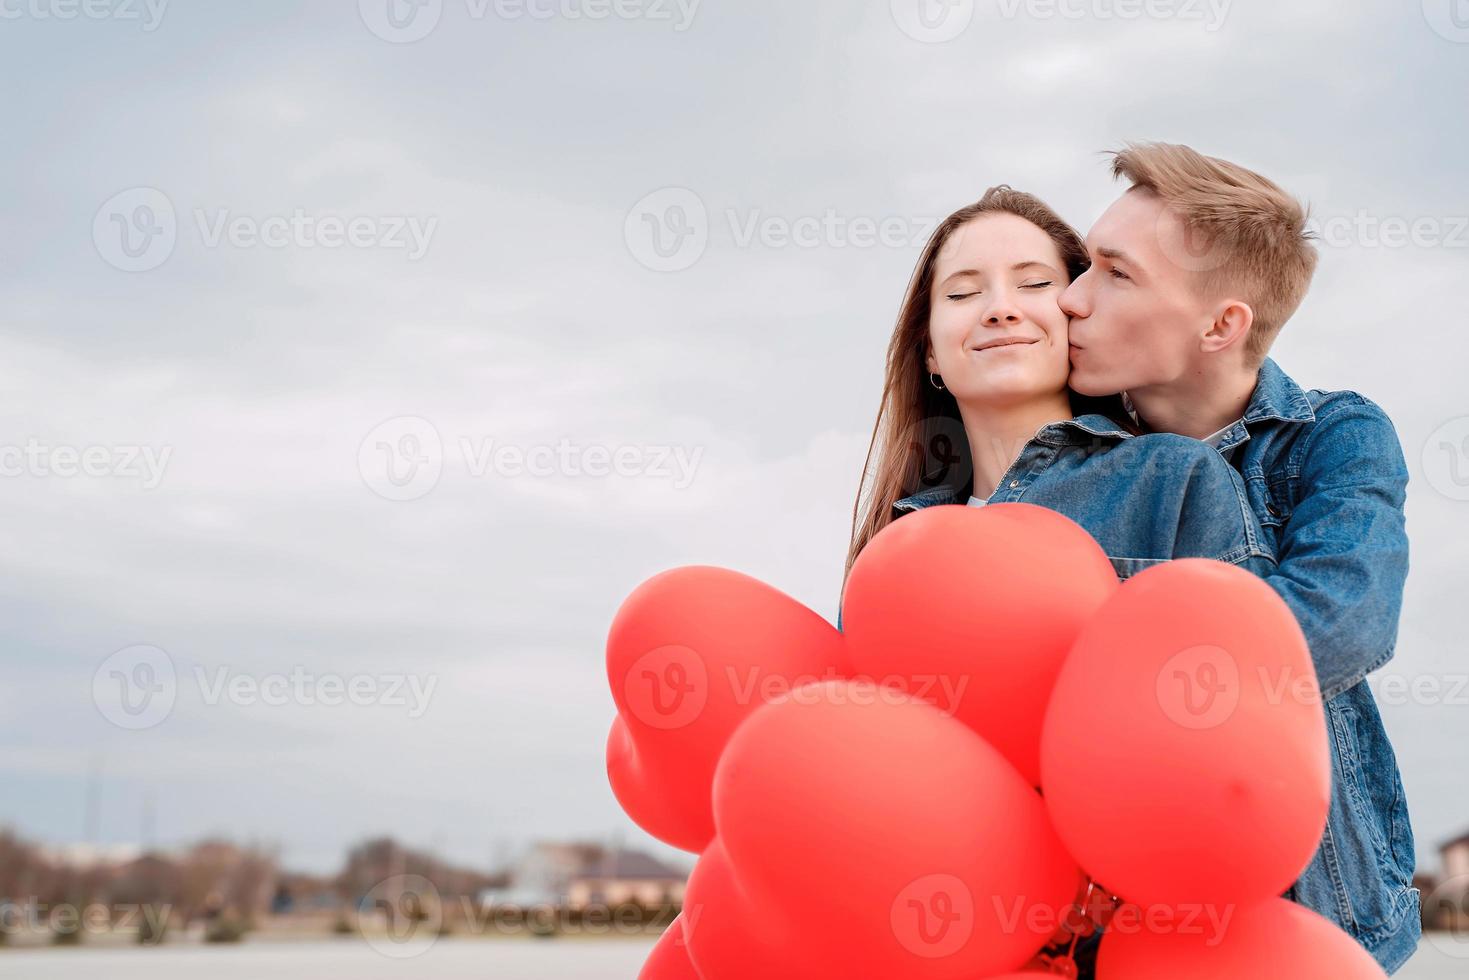 unga älskande par med röda ballonger som omfamnar och kysser utomhus foto